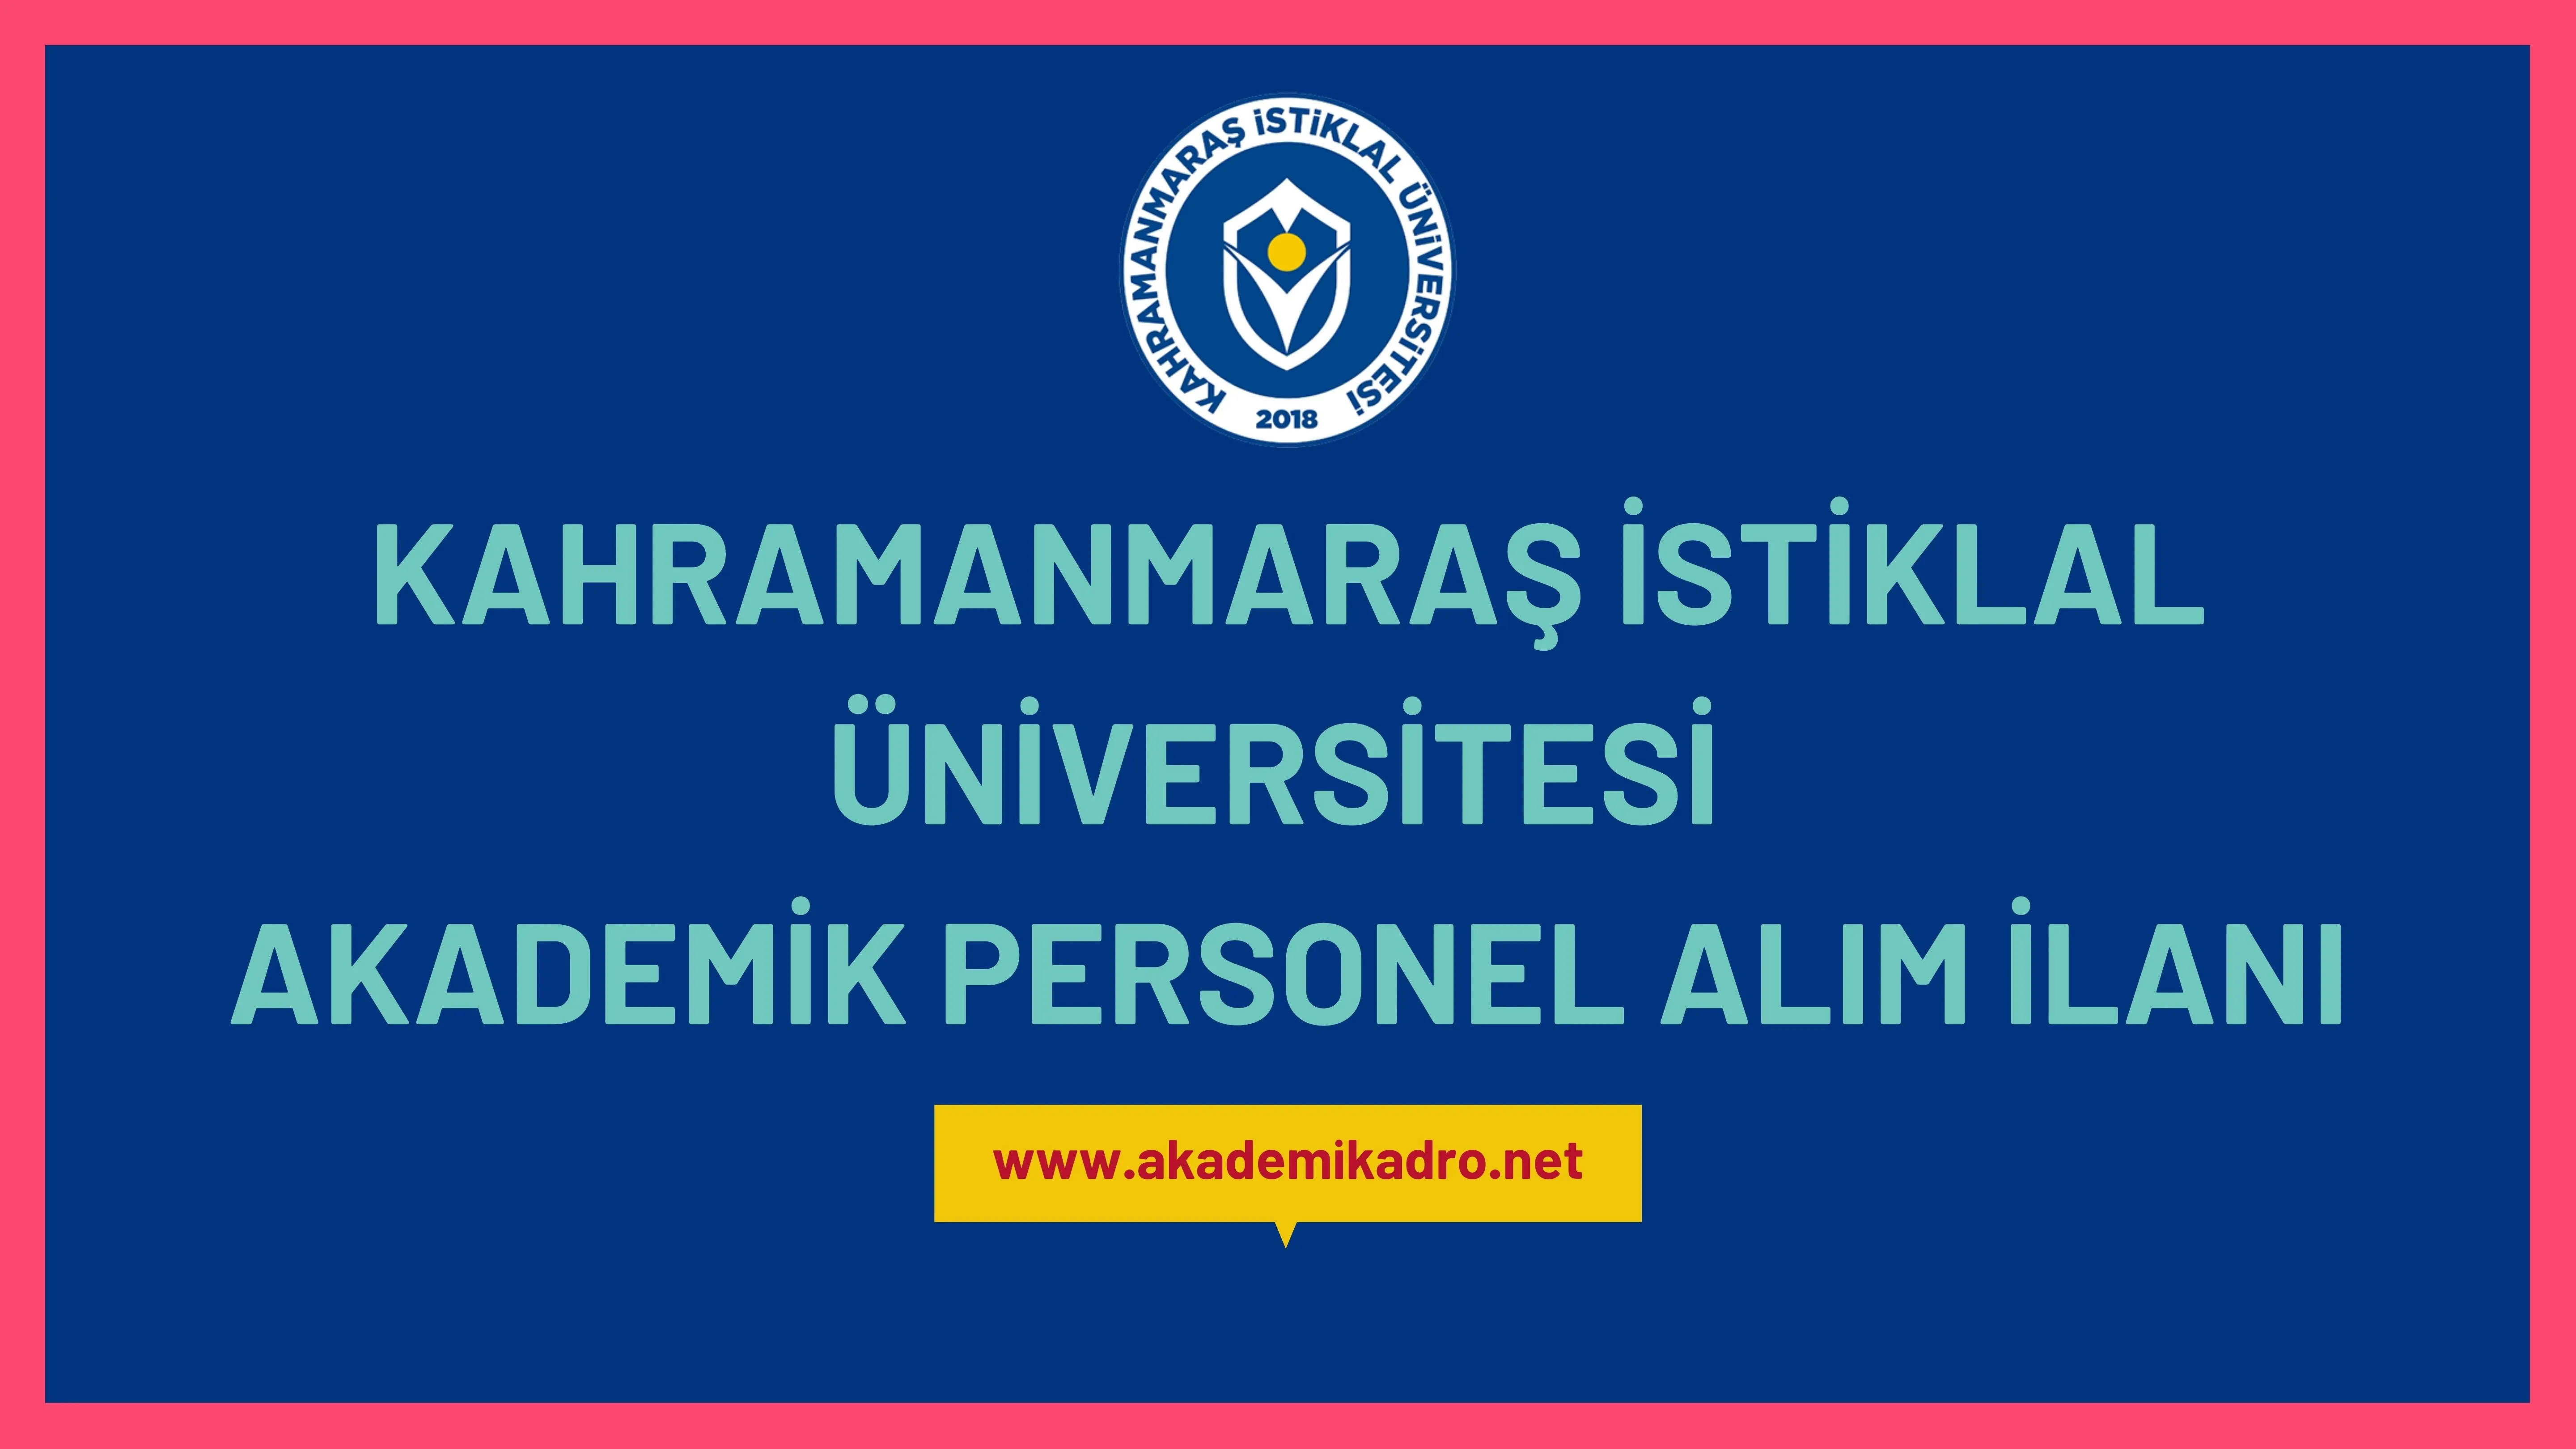 Kahramanmaraş İstiklal Üniversitesi birçok alandan 15 Akademik personel alacak. 